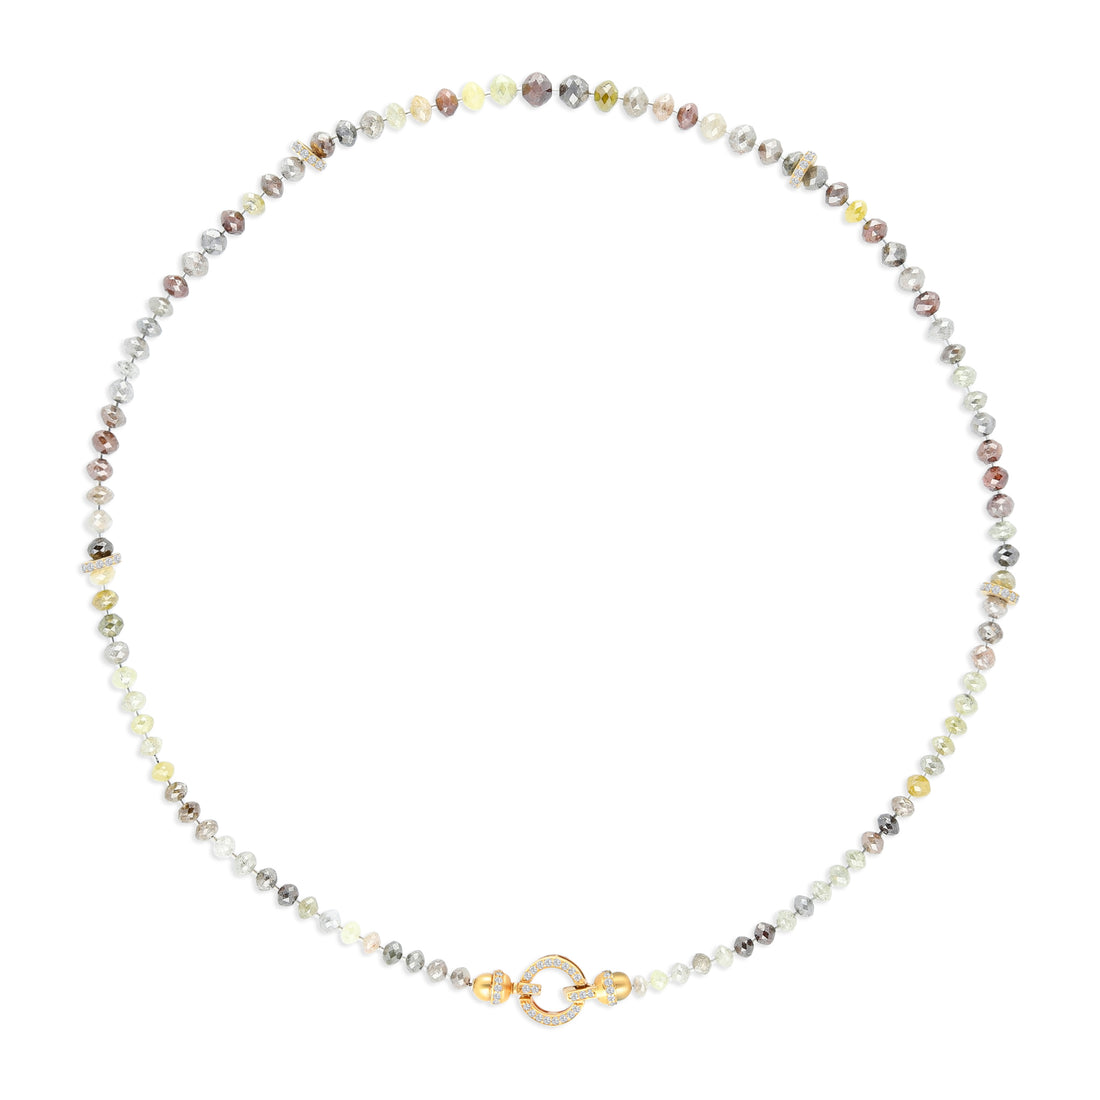 Multicolor Mix Diamond Beaded Necklace - 80.75 Carat